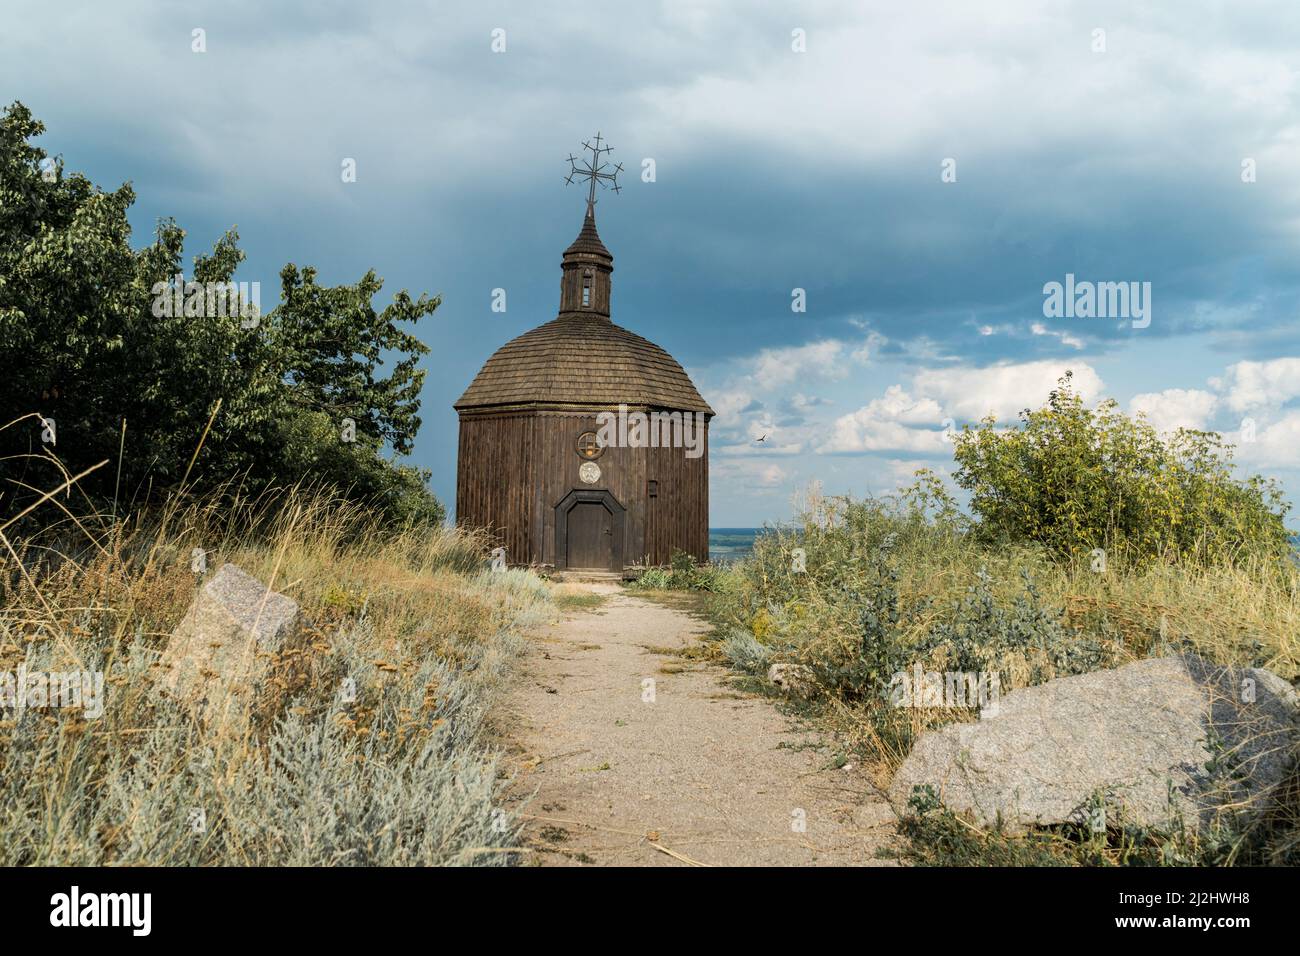 Paysage d'une petite église en bois sur une colline avec une vue magnifique sur une rivière Dneper à Vitachov (Vytachov), Ukraine. Excursions d'une journée à Kiev, Royaume-Uni Banque D'Images